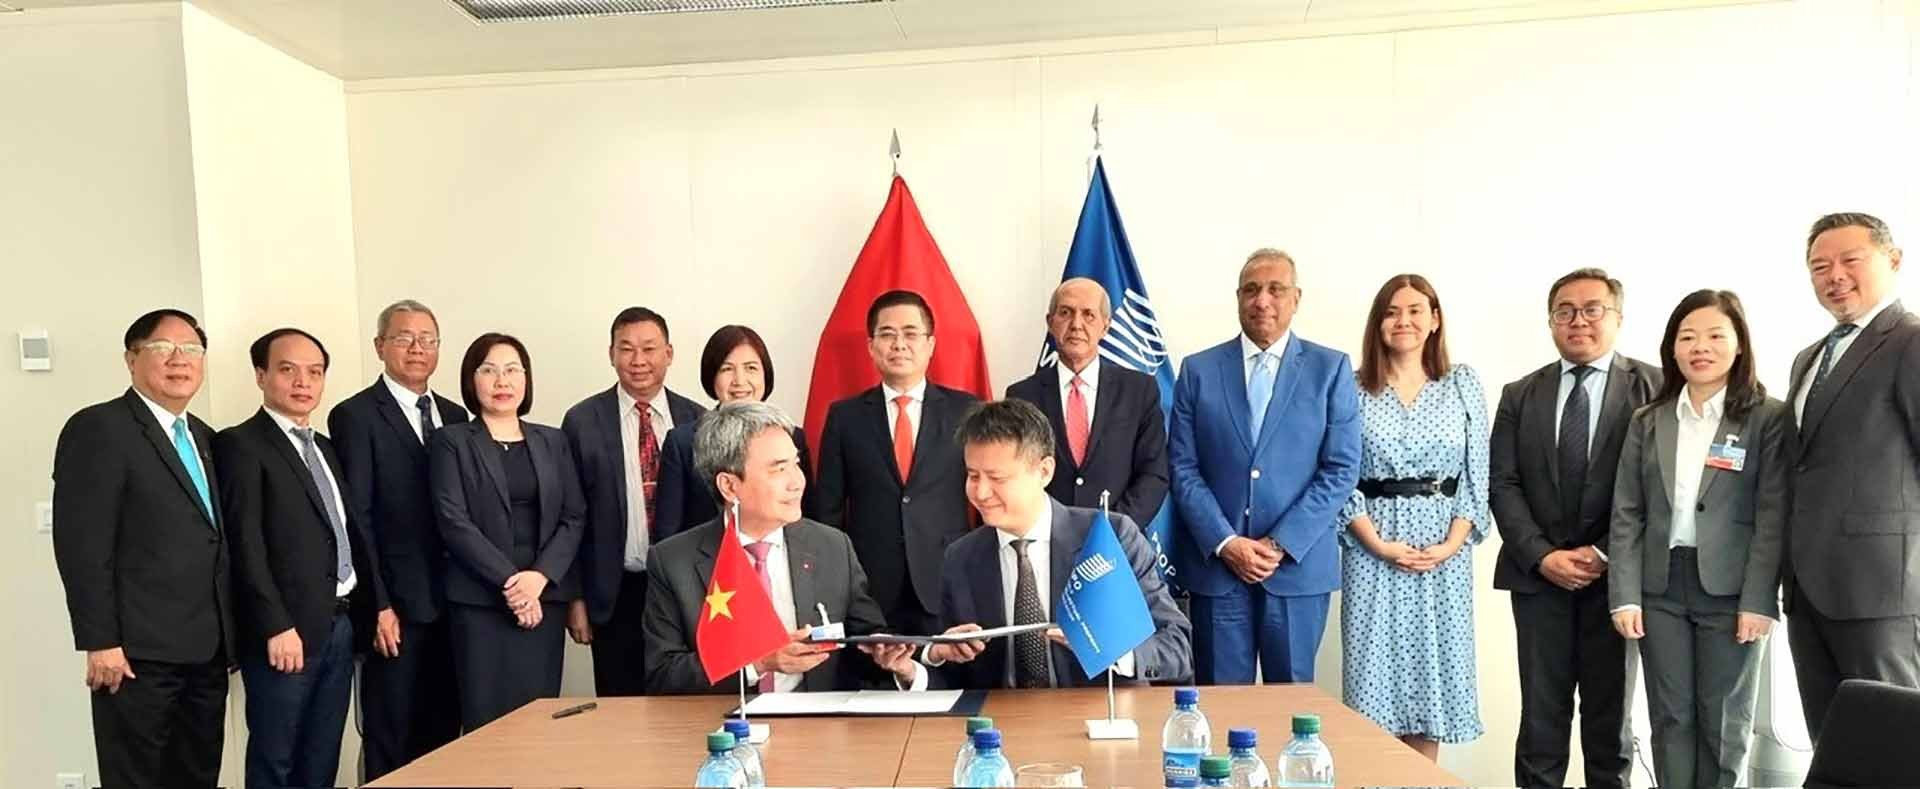 Tổng giám đốc WIPO Daren Tang và Cục trưởng Cục Sở hữu trí tuệ Đinh Hữu Phí ký kết thoả thuận hợp tác giữa WIPO và Cục Sở hữu trí tuệ, với sự chứng kiến của Thứ trưởng Nguyễn Hoàng Giang và các đại diện của WIPO. (Nguồn: Bộ KH&CN)